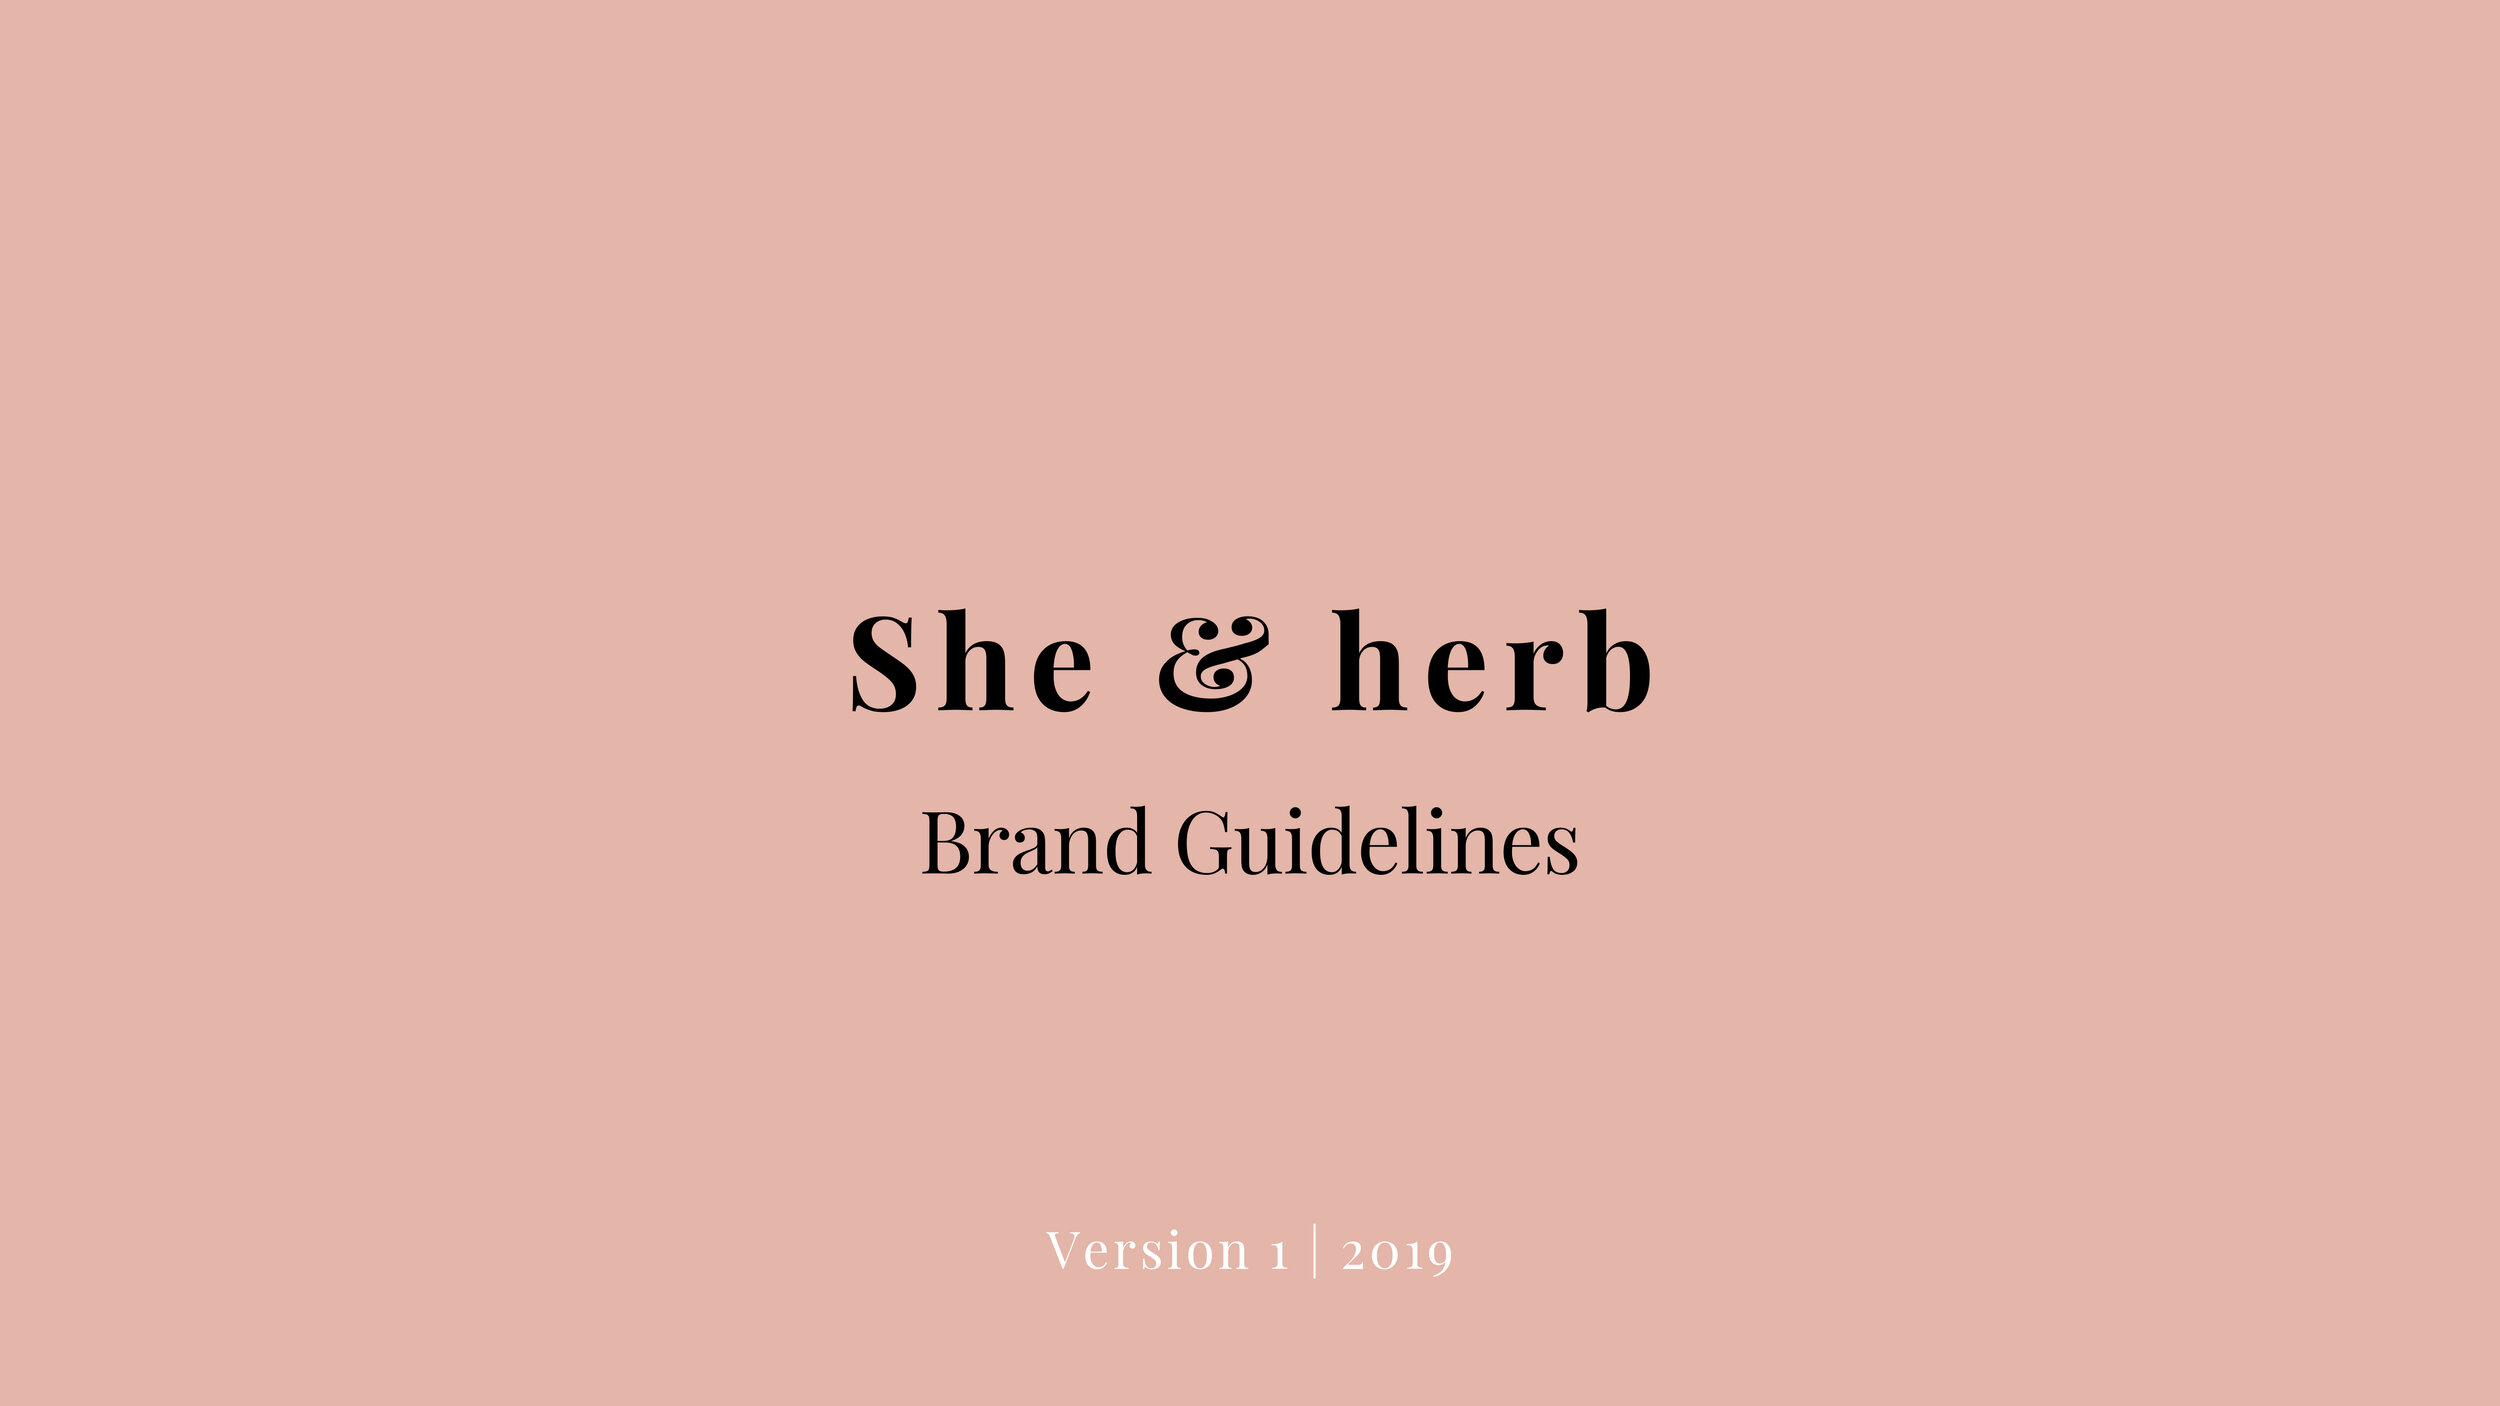 She & herb Brand Guidelines-1.jpg